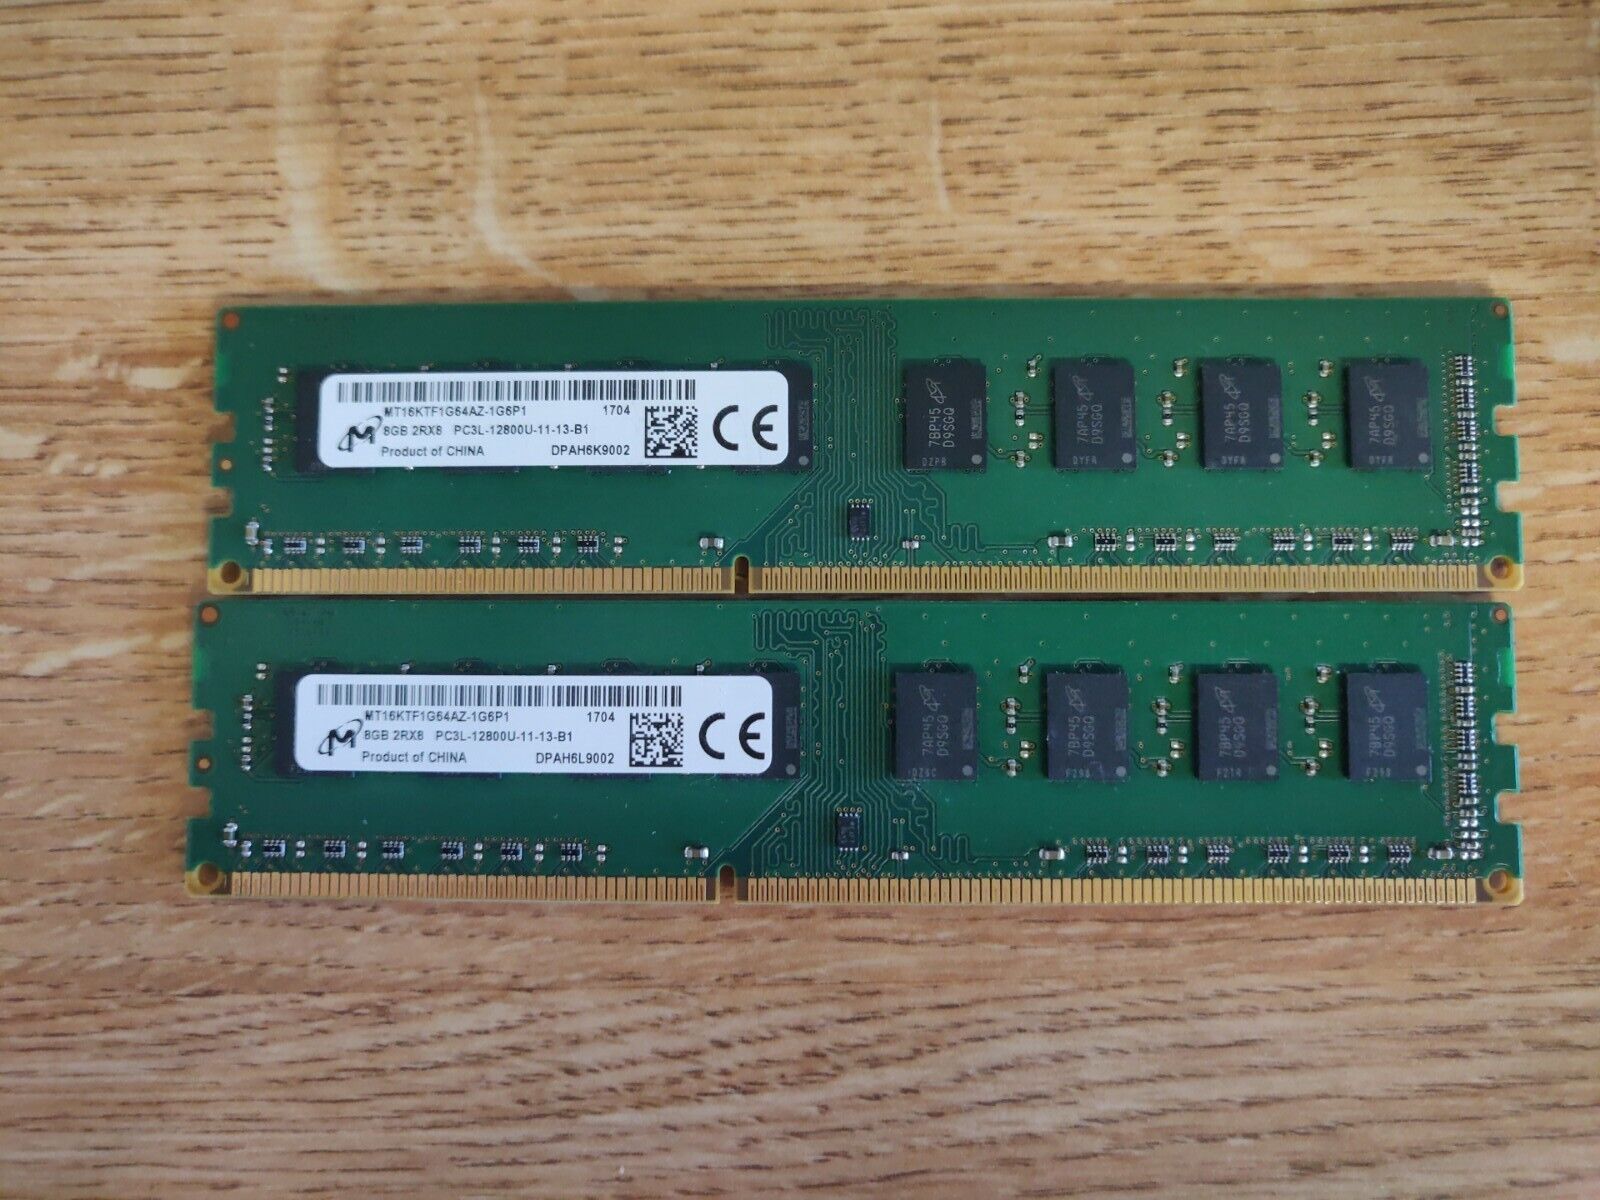 Micron 2 x 8GB 2Rx8 PC3L-12800U DDR3-1600 240-Pin Memory MT16KTF1G64AZ-1G6P1 [8]